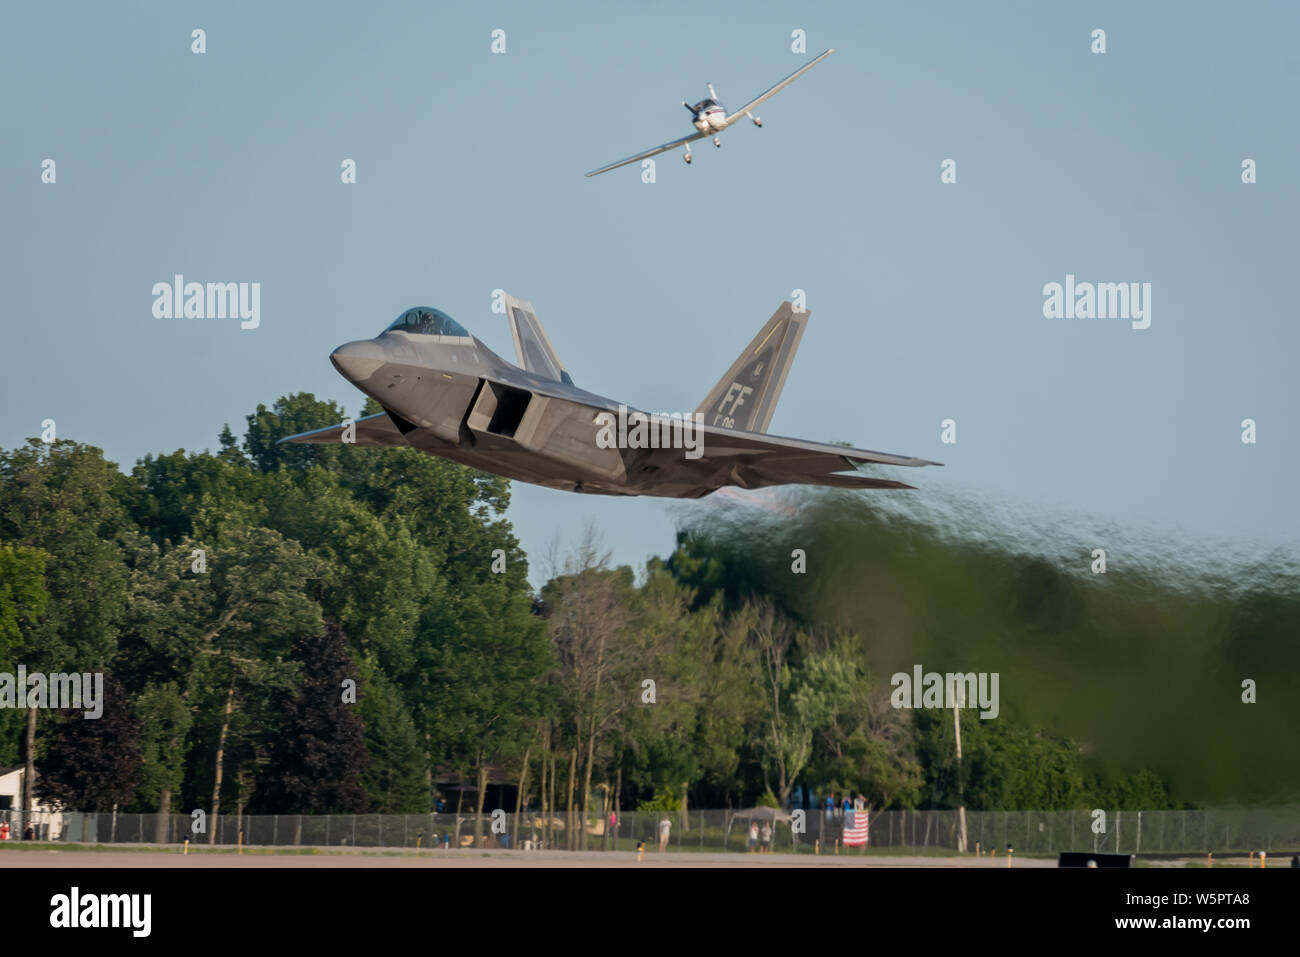 Le F-22 Raptor arrive à l'équipe de démonstration de EAA AirVenture Oshkosh, Wisconsin, le 22 juillet 2019. Avec plus de 500 000 spectateurs présents et 10 000 aéronefs en exposition, Oshkosh détient le titre du plus grand show de l'air dans le monde. (U.S. Photo de l'Armée de l'air par Slt Samuel Eckholm) Banque D'Images